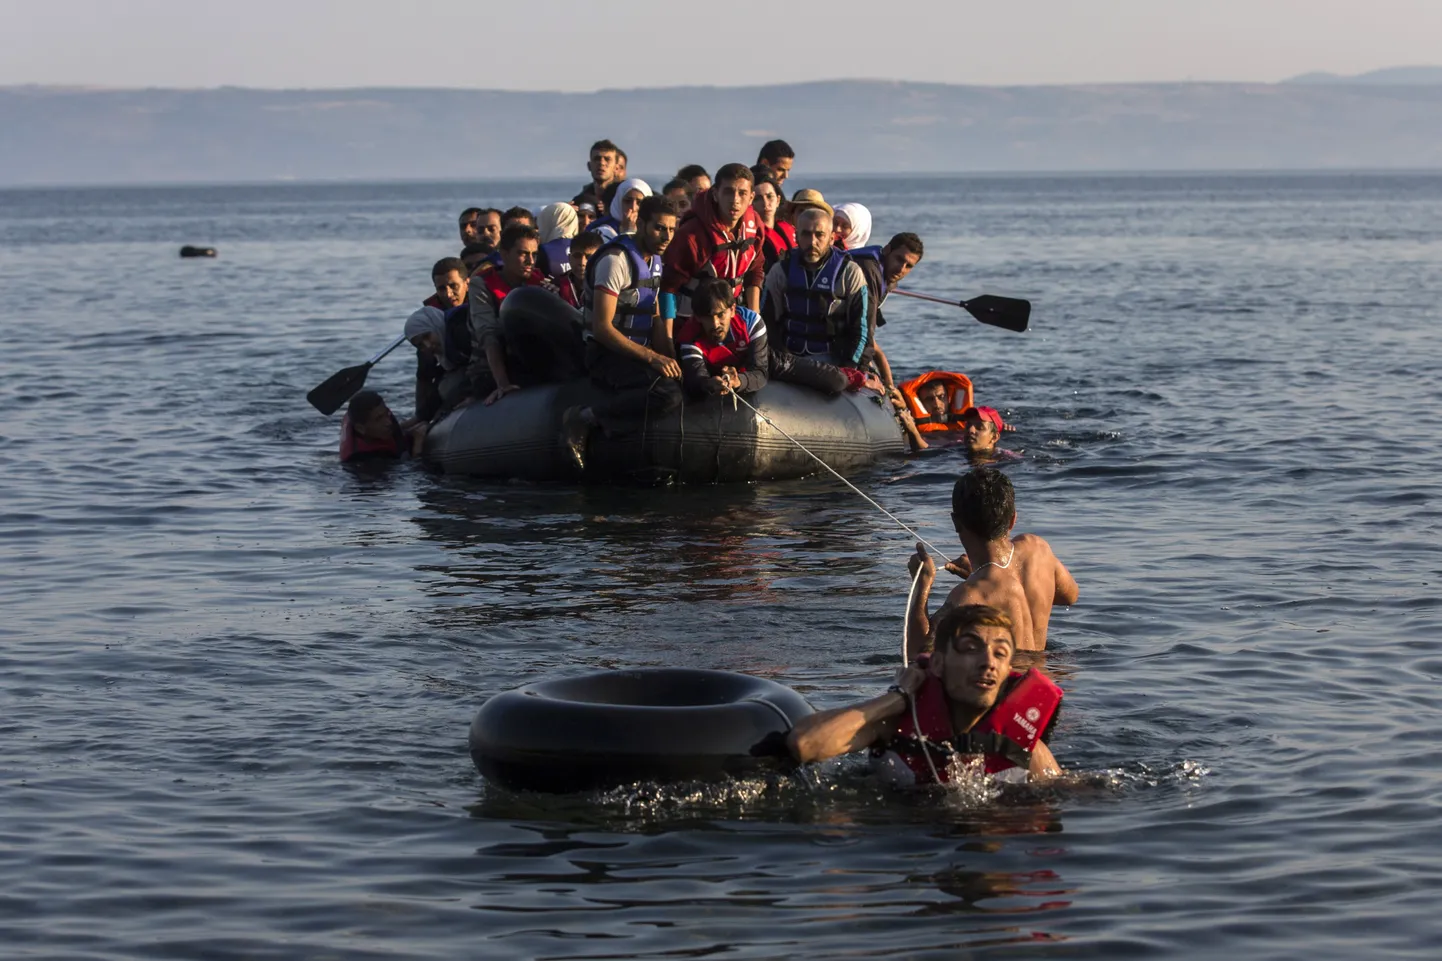 Kreeka saarele Lesbosele saabunud paadipõgenikud Süüriast ja Afganistanist.